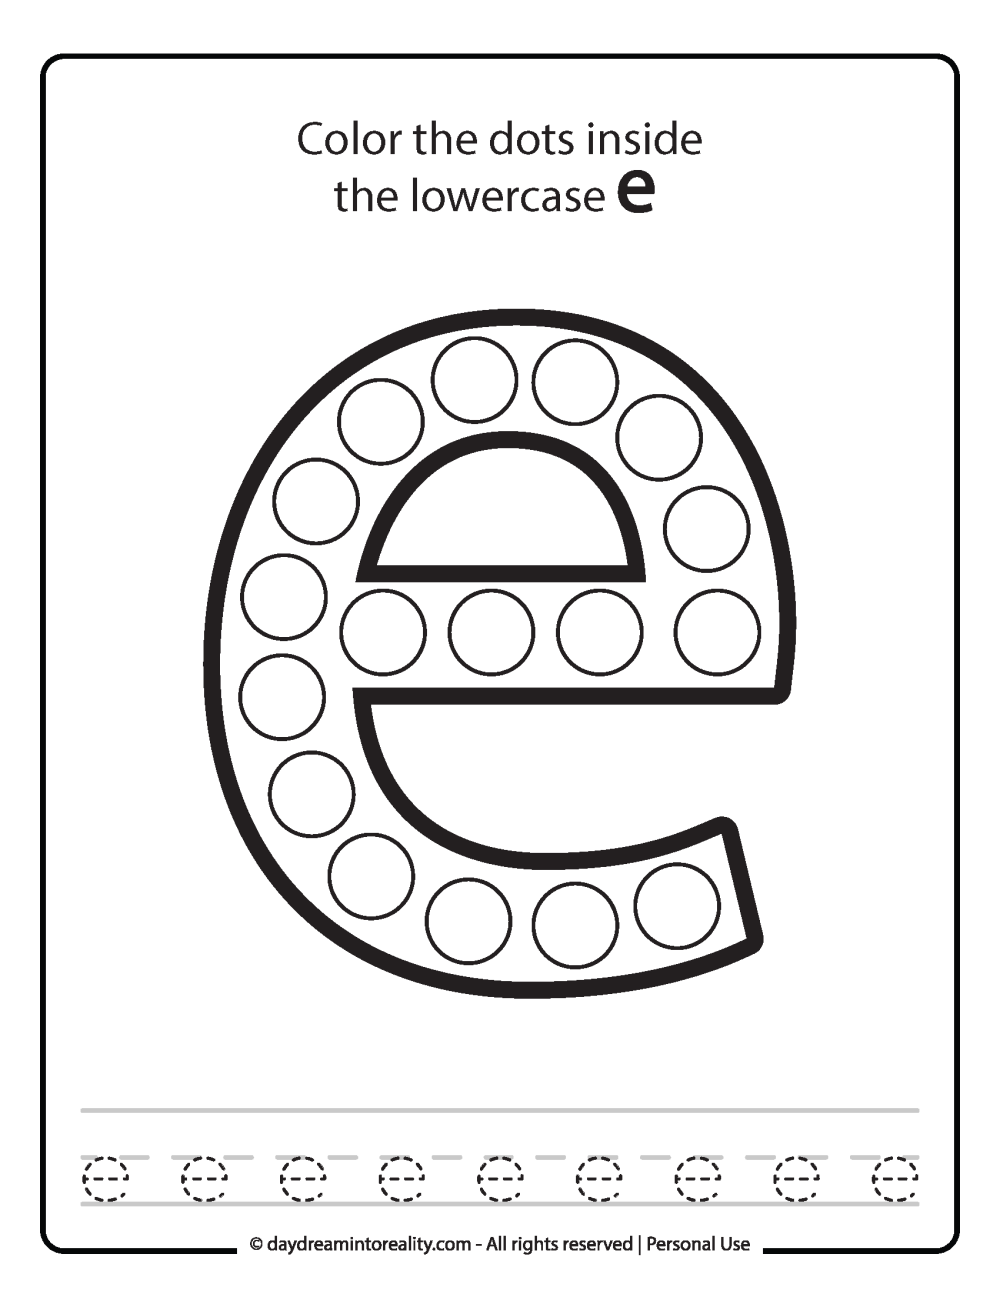 Lowercase "e" Dot Marker Worksheet Free Printable activity for kids (preschool, kindergarten)